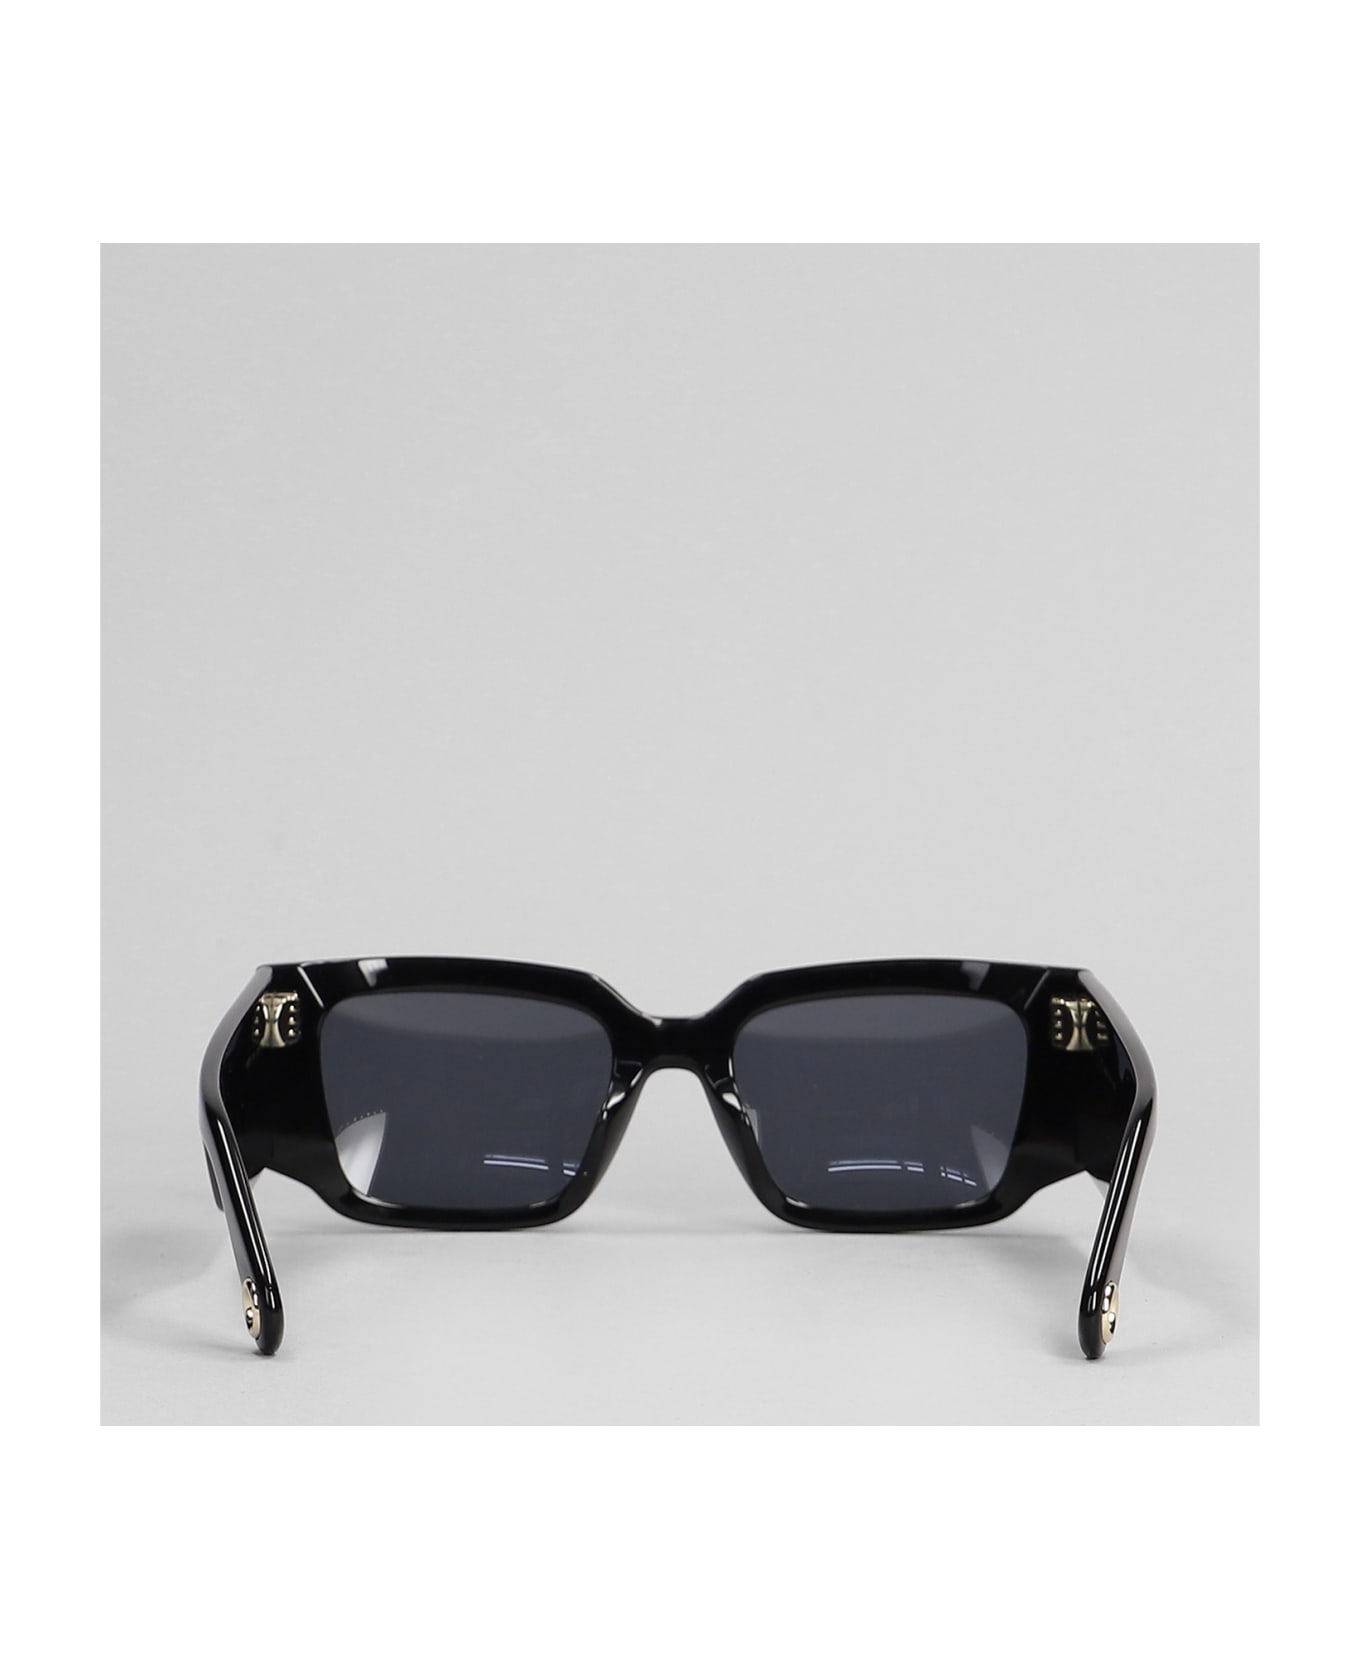 Lanvin Sunglasses In Black Acetate - black